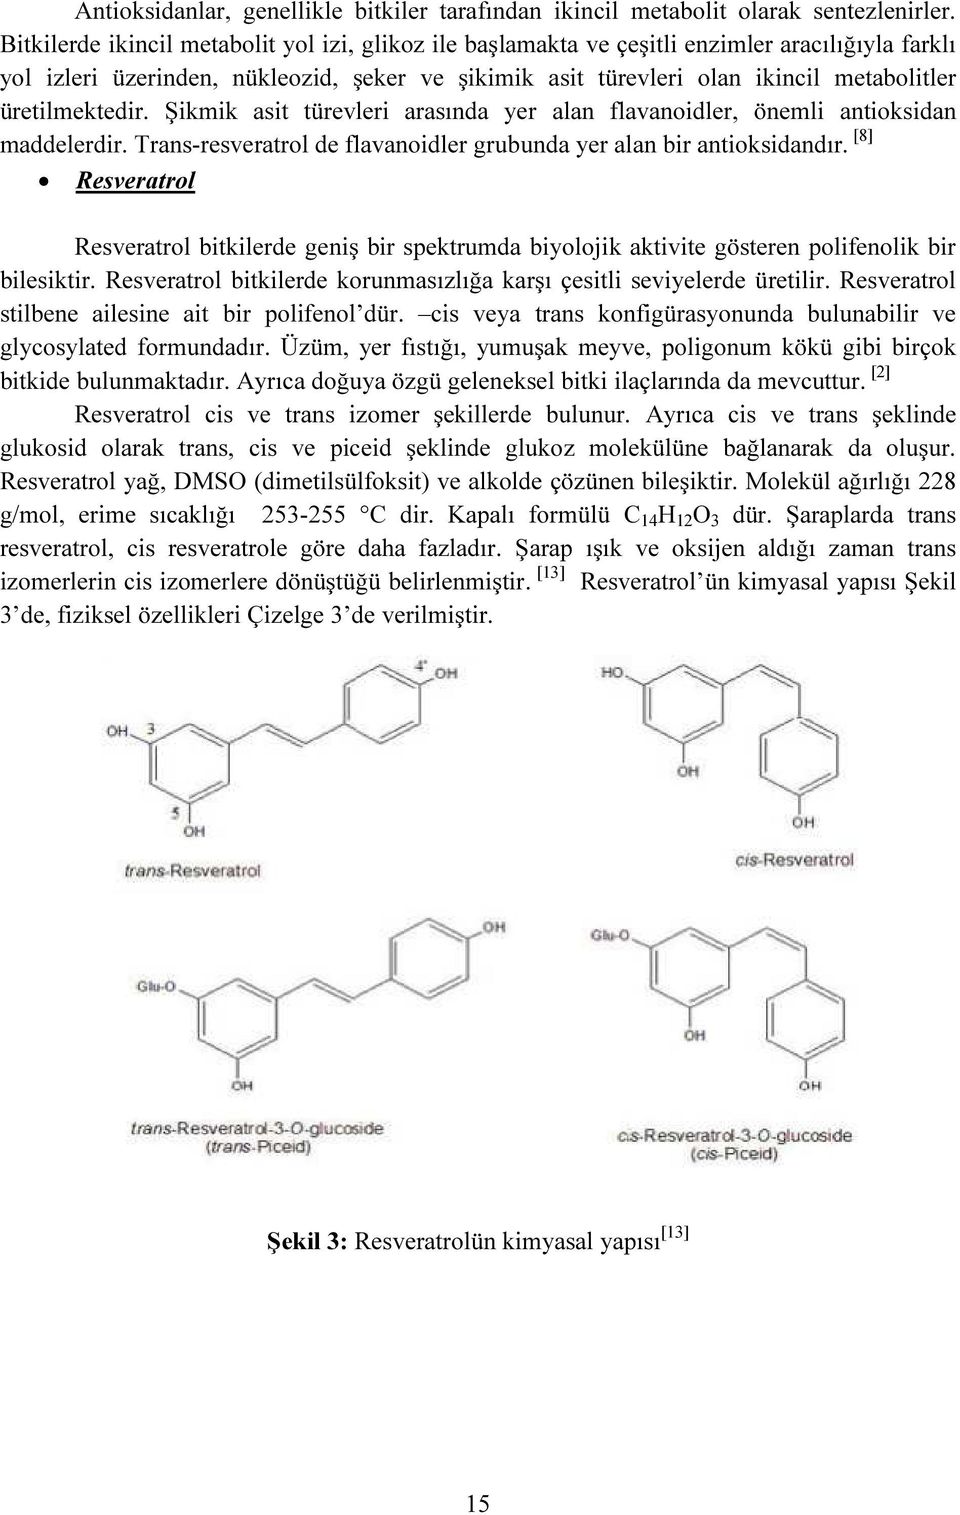 üretilmektedir. Şikmik asit türevleri arasında yer alan flavanoidler, önemli antioksidan maddelerdir. Trans-resveratrol de flavanoidler grubunda yer alan bir antioksidandır.